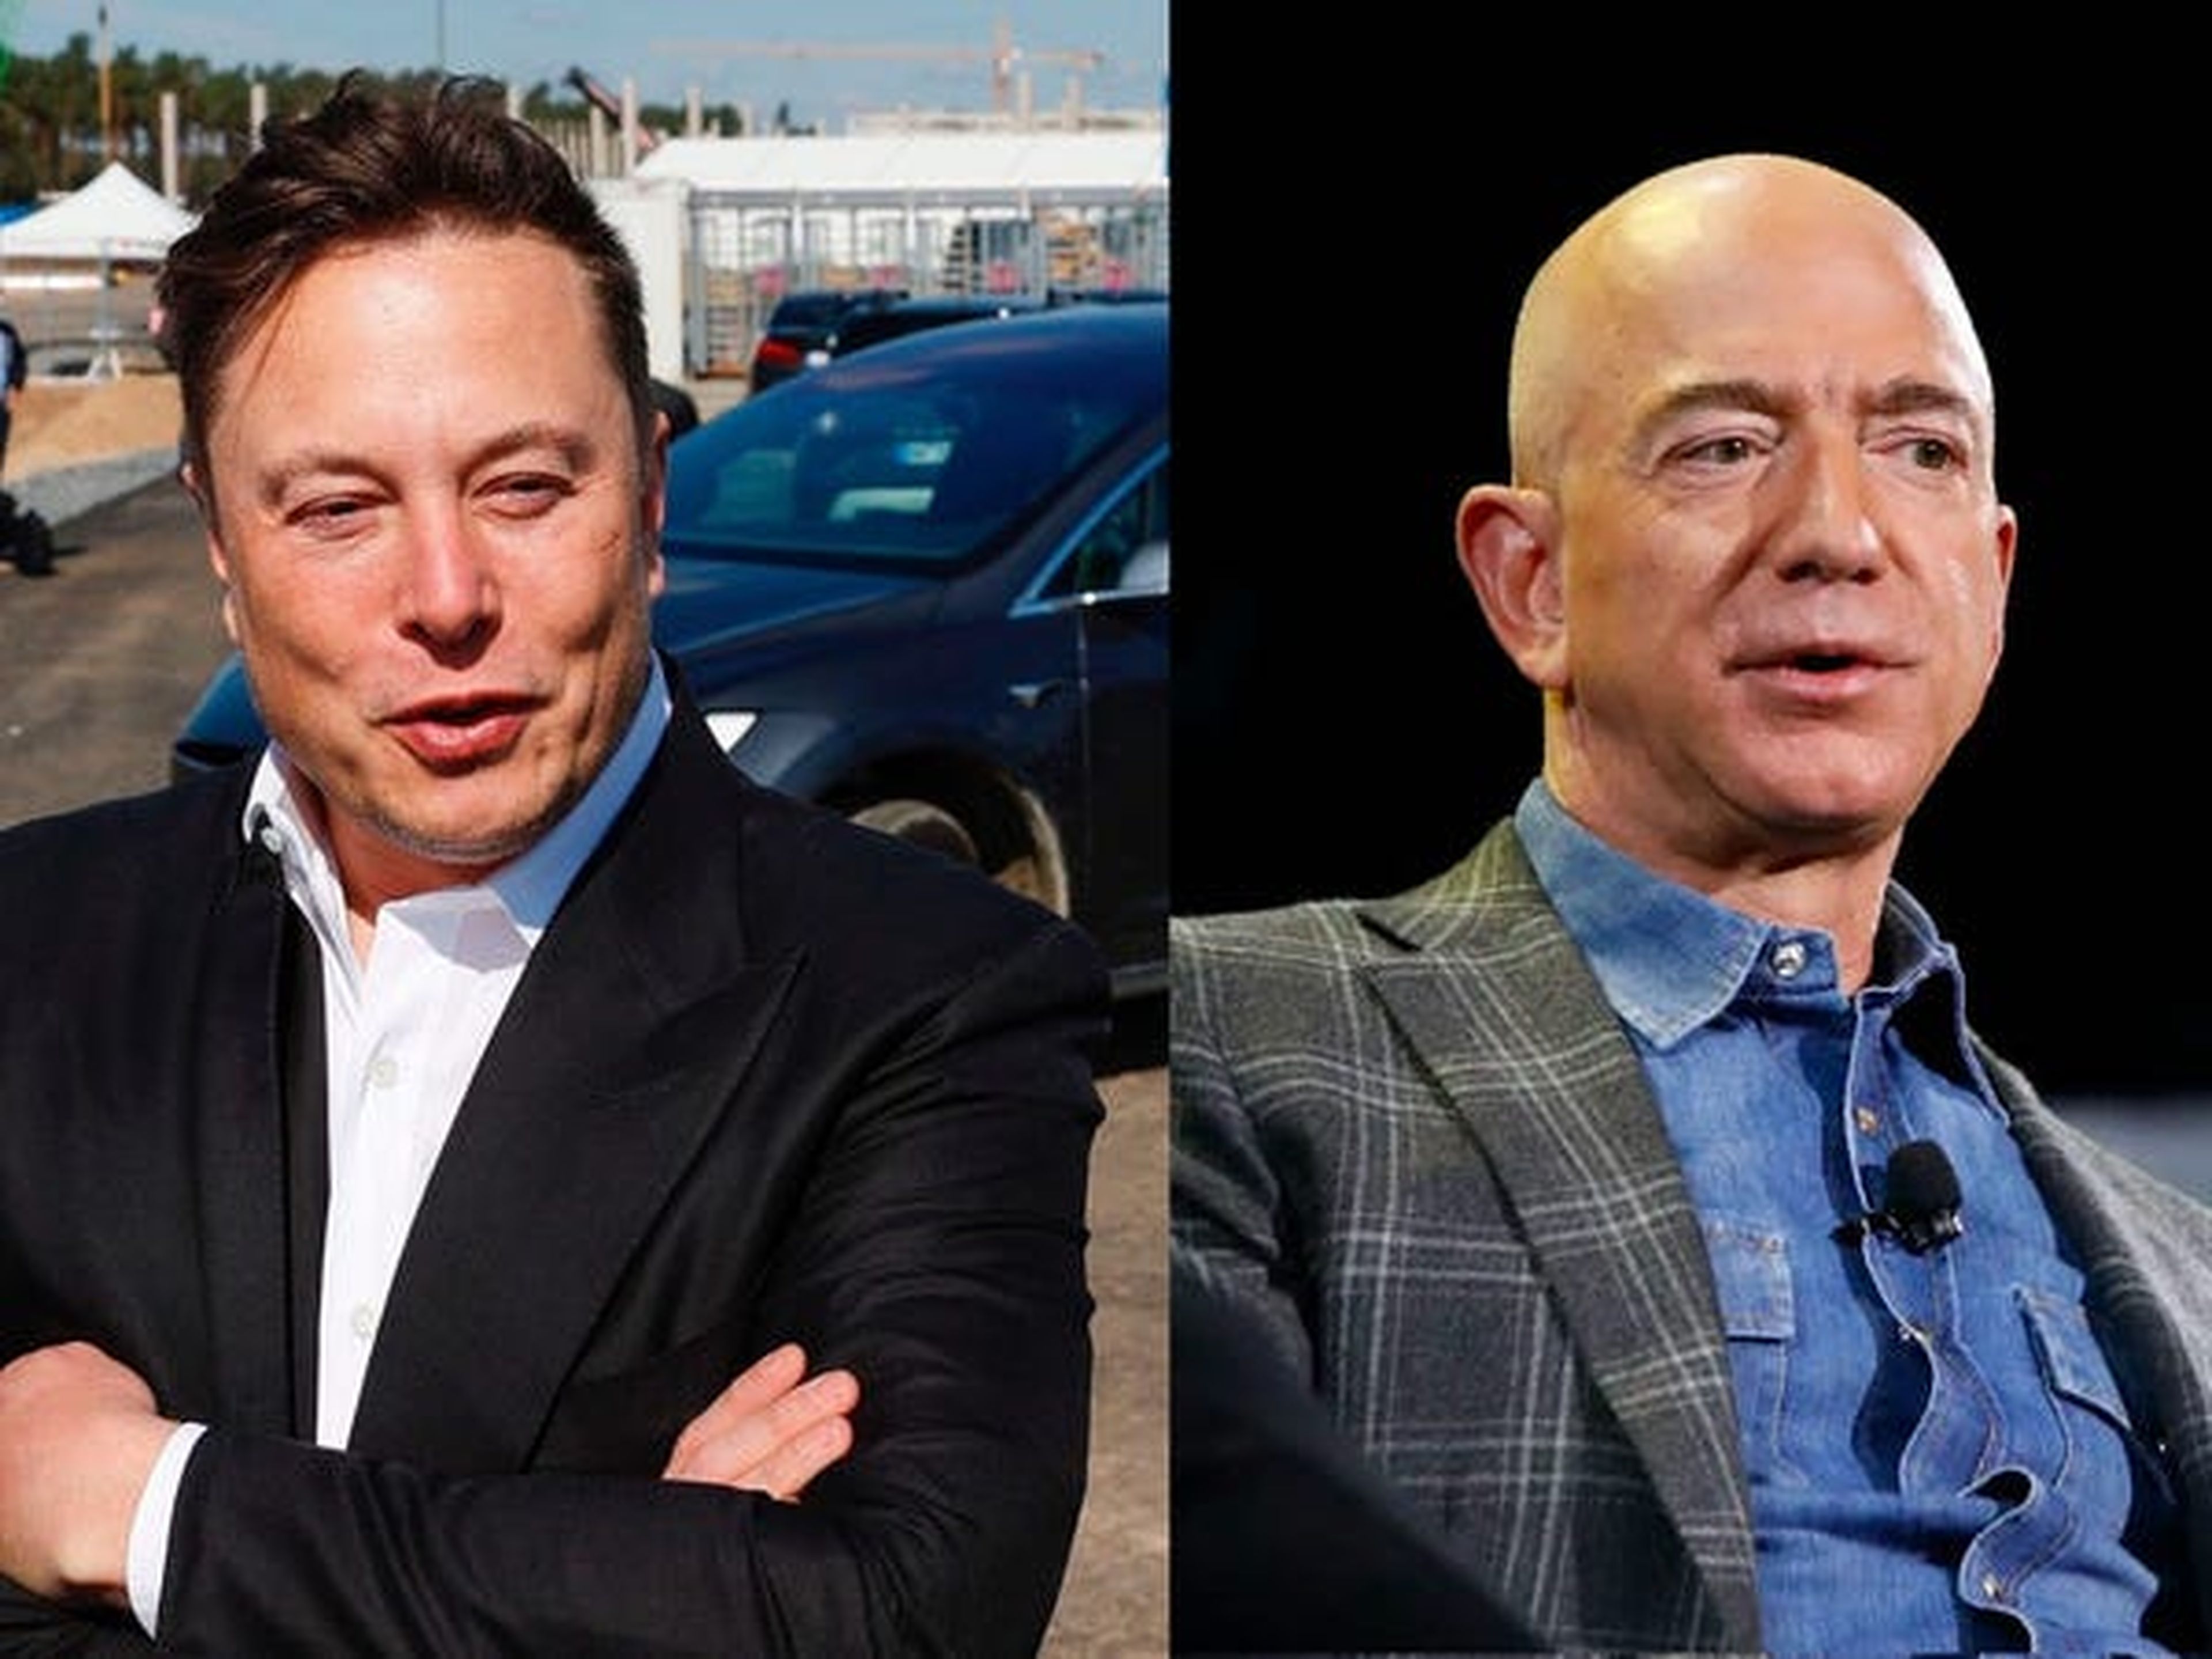 Elon Musk y Jeff Bezos